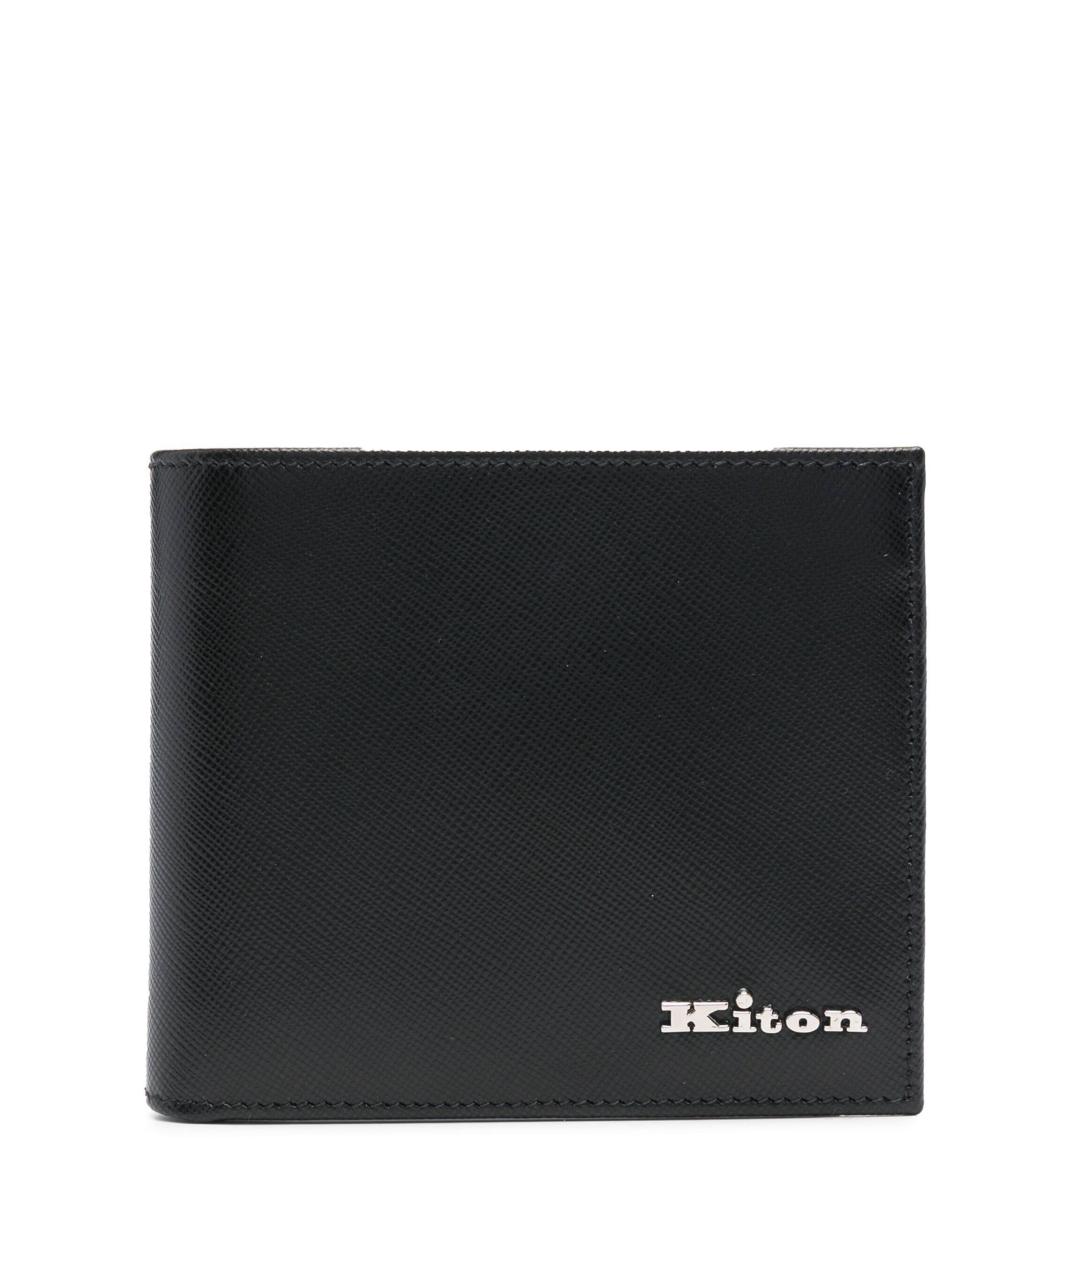 KITON Черный кожаный кошелек, фото 1